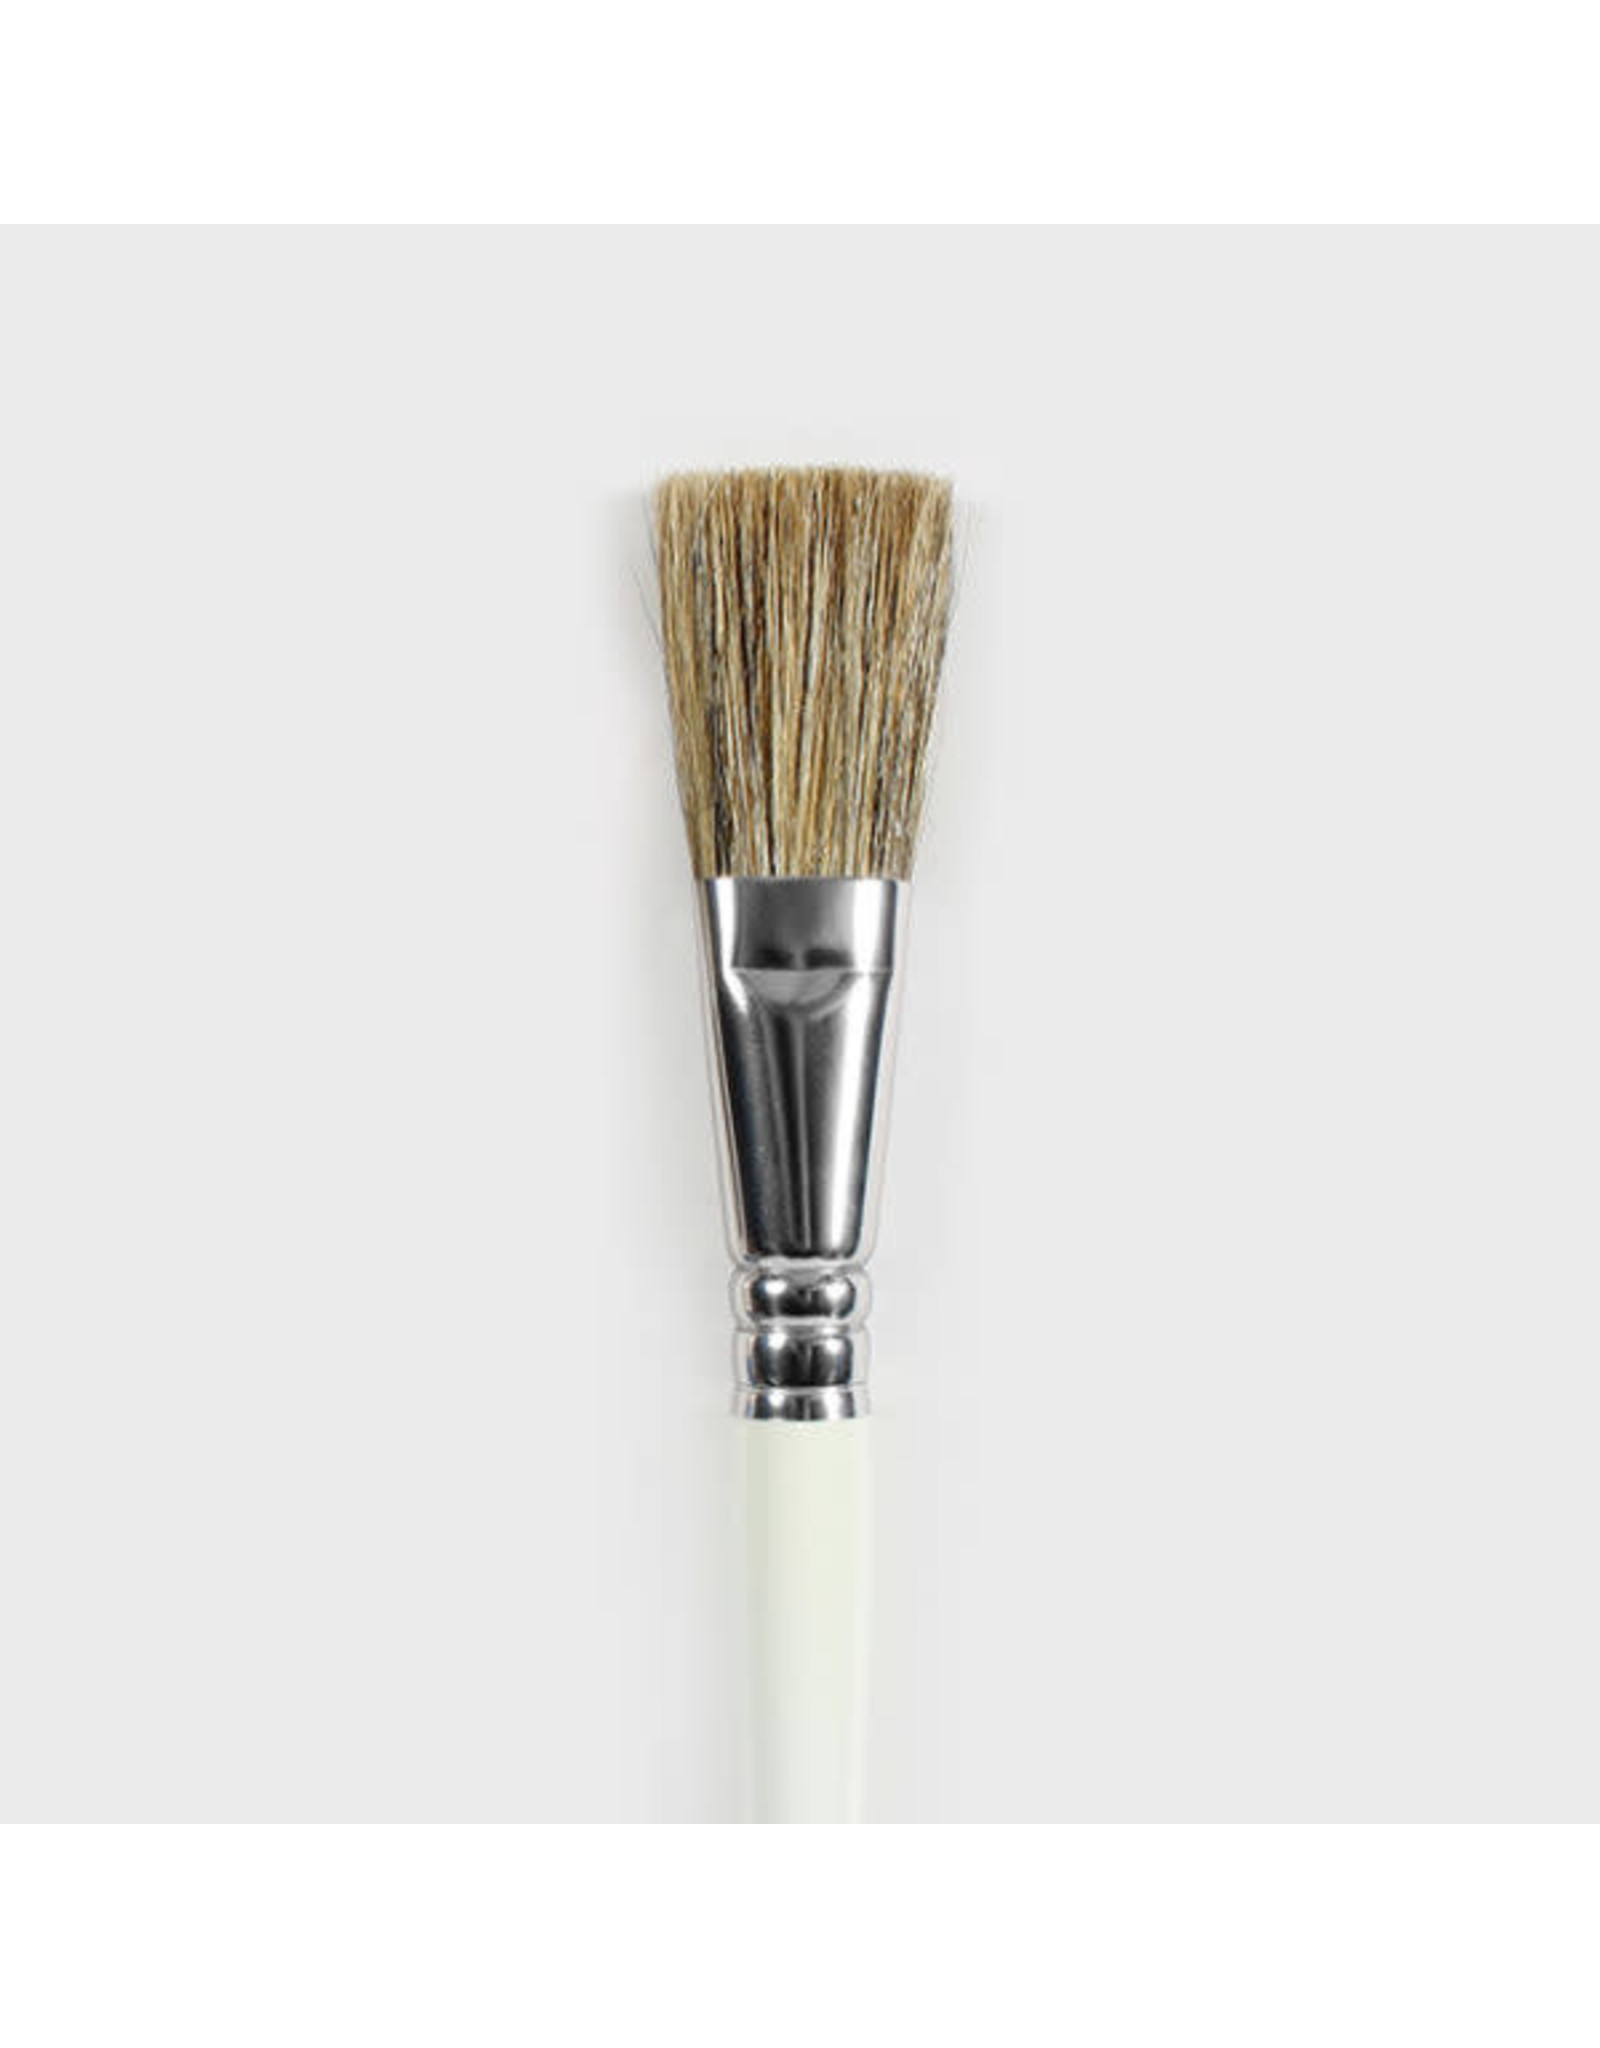 MAYCO 1" Basic Glaze Brush